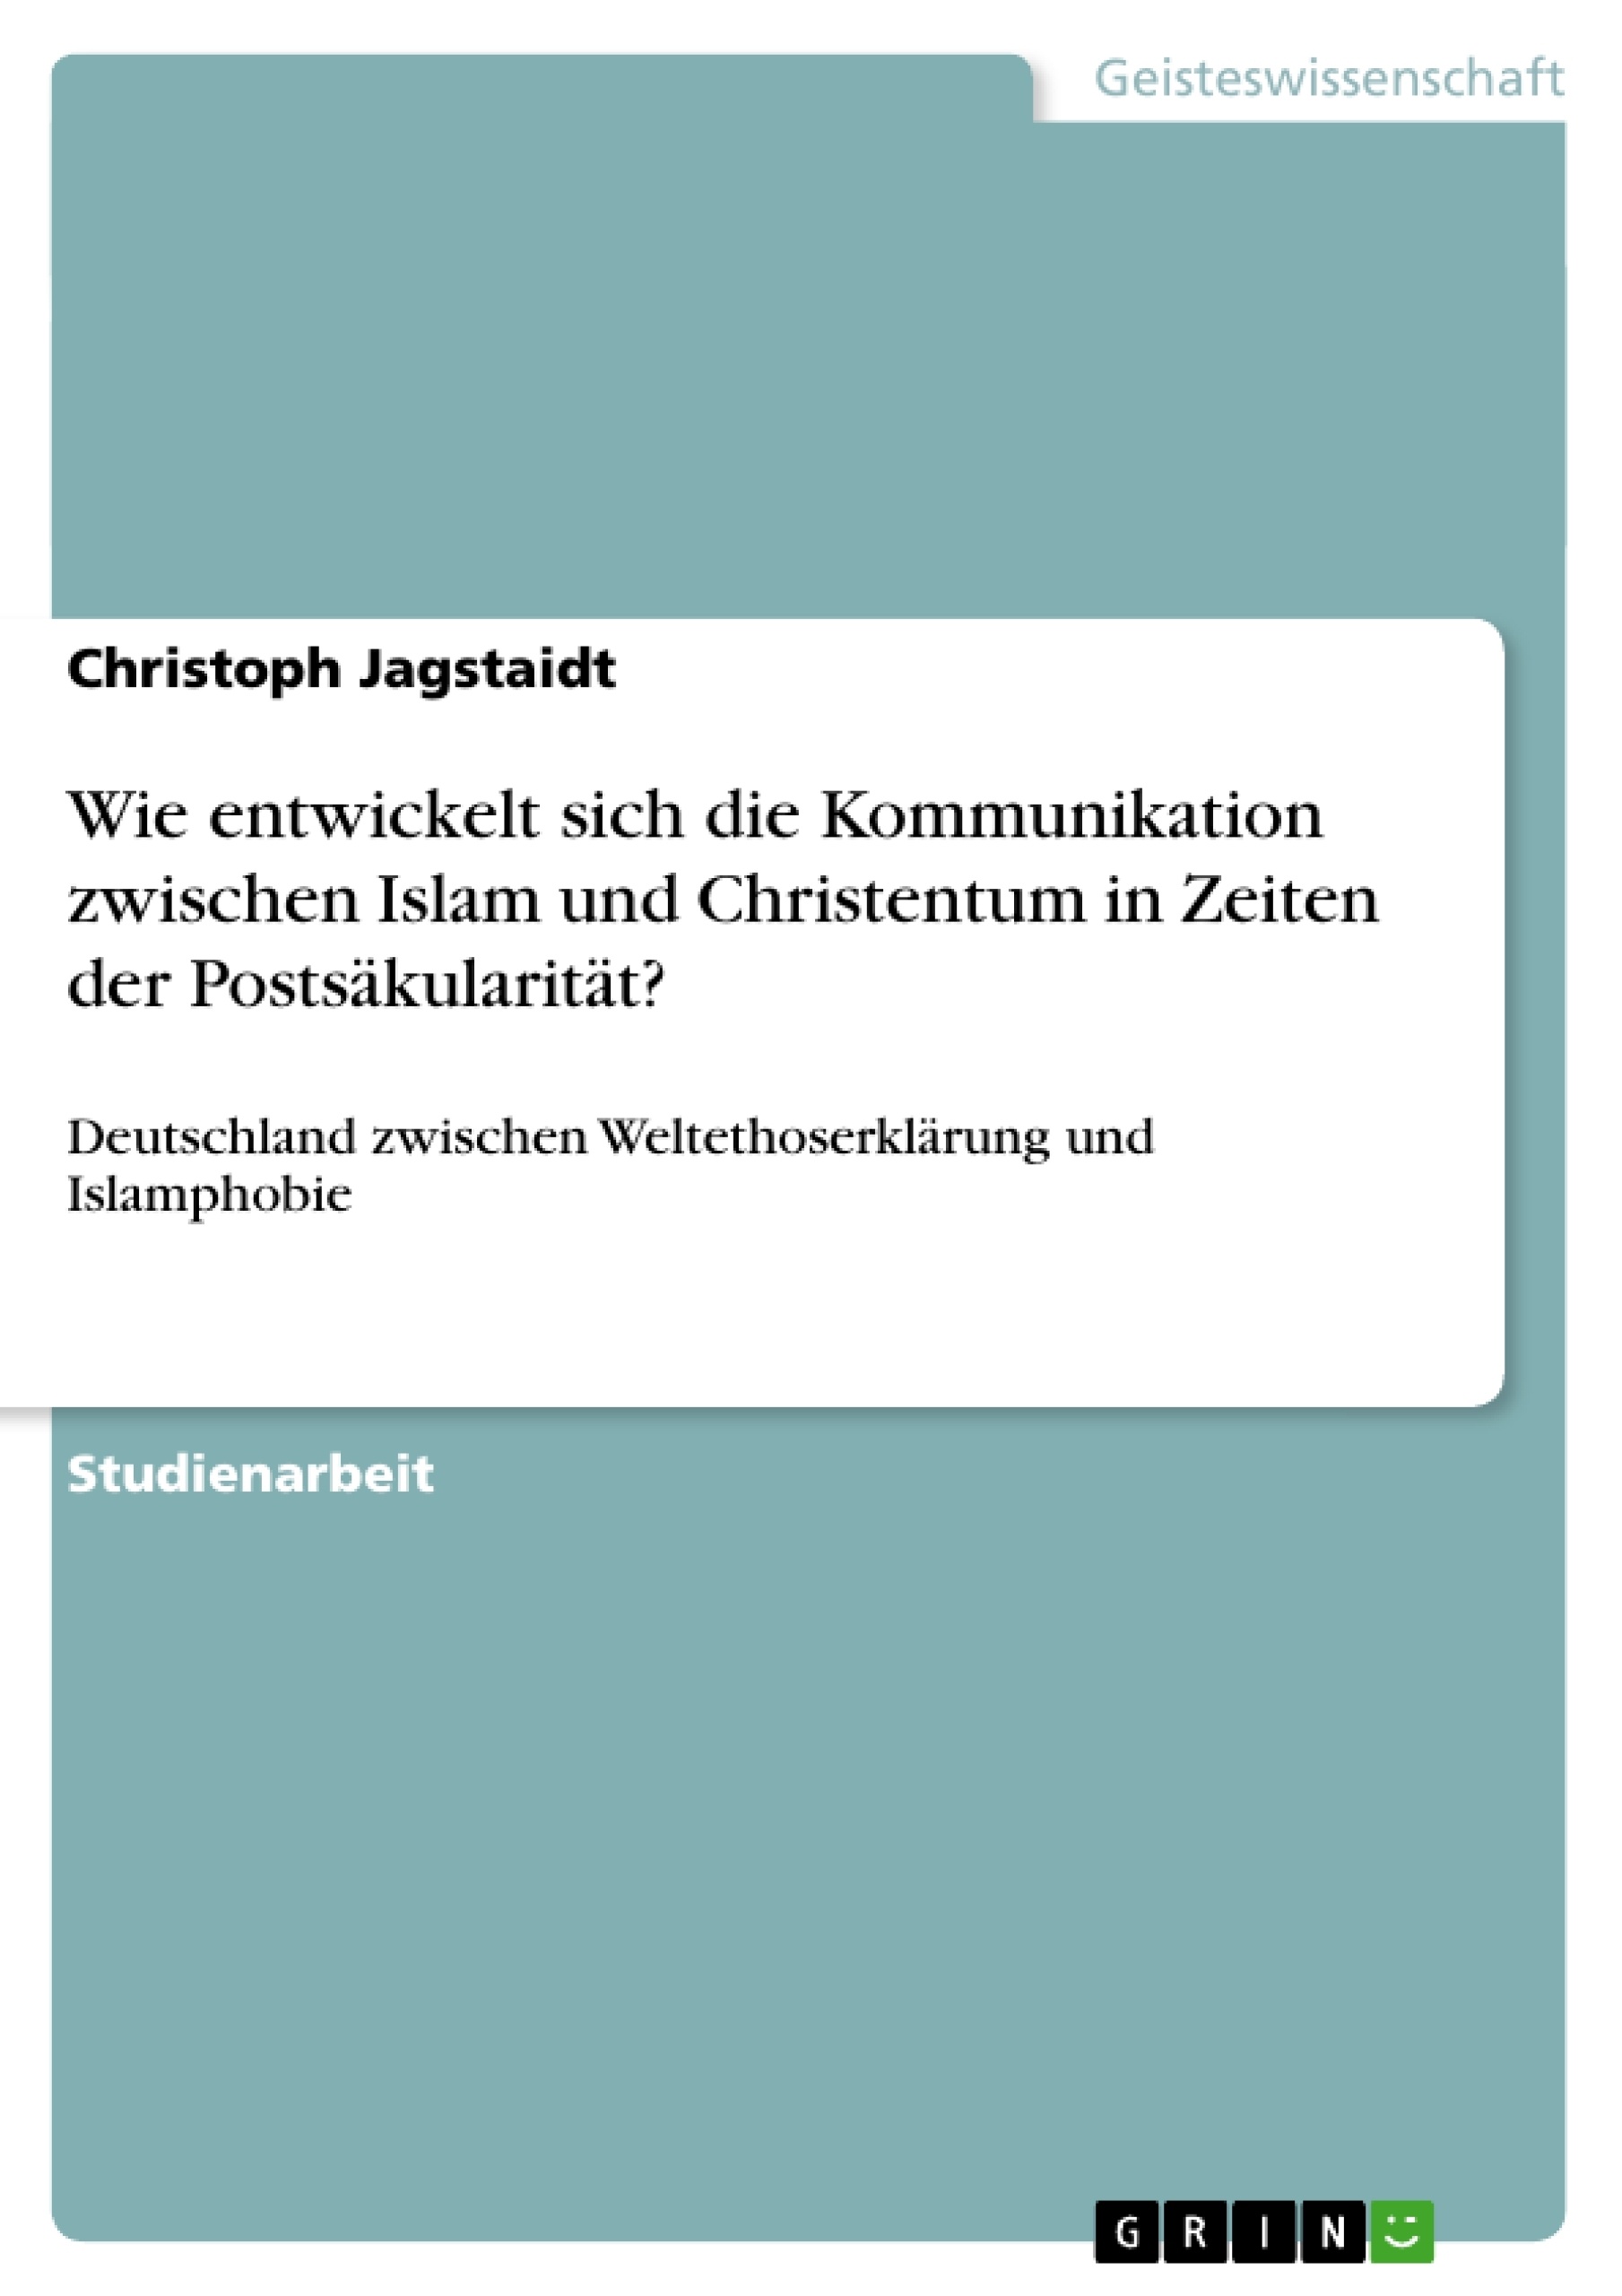 Titre: Wie entwickelt sich die Kommunikation zwischen Islam und Christentum in Zeiten der Postsäkularität?